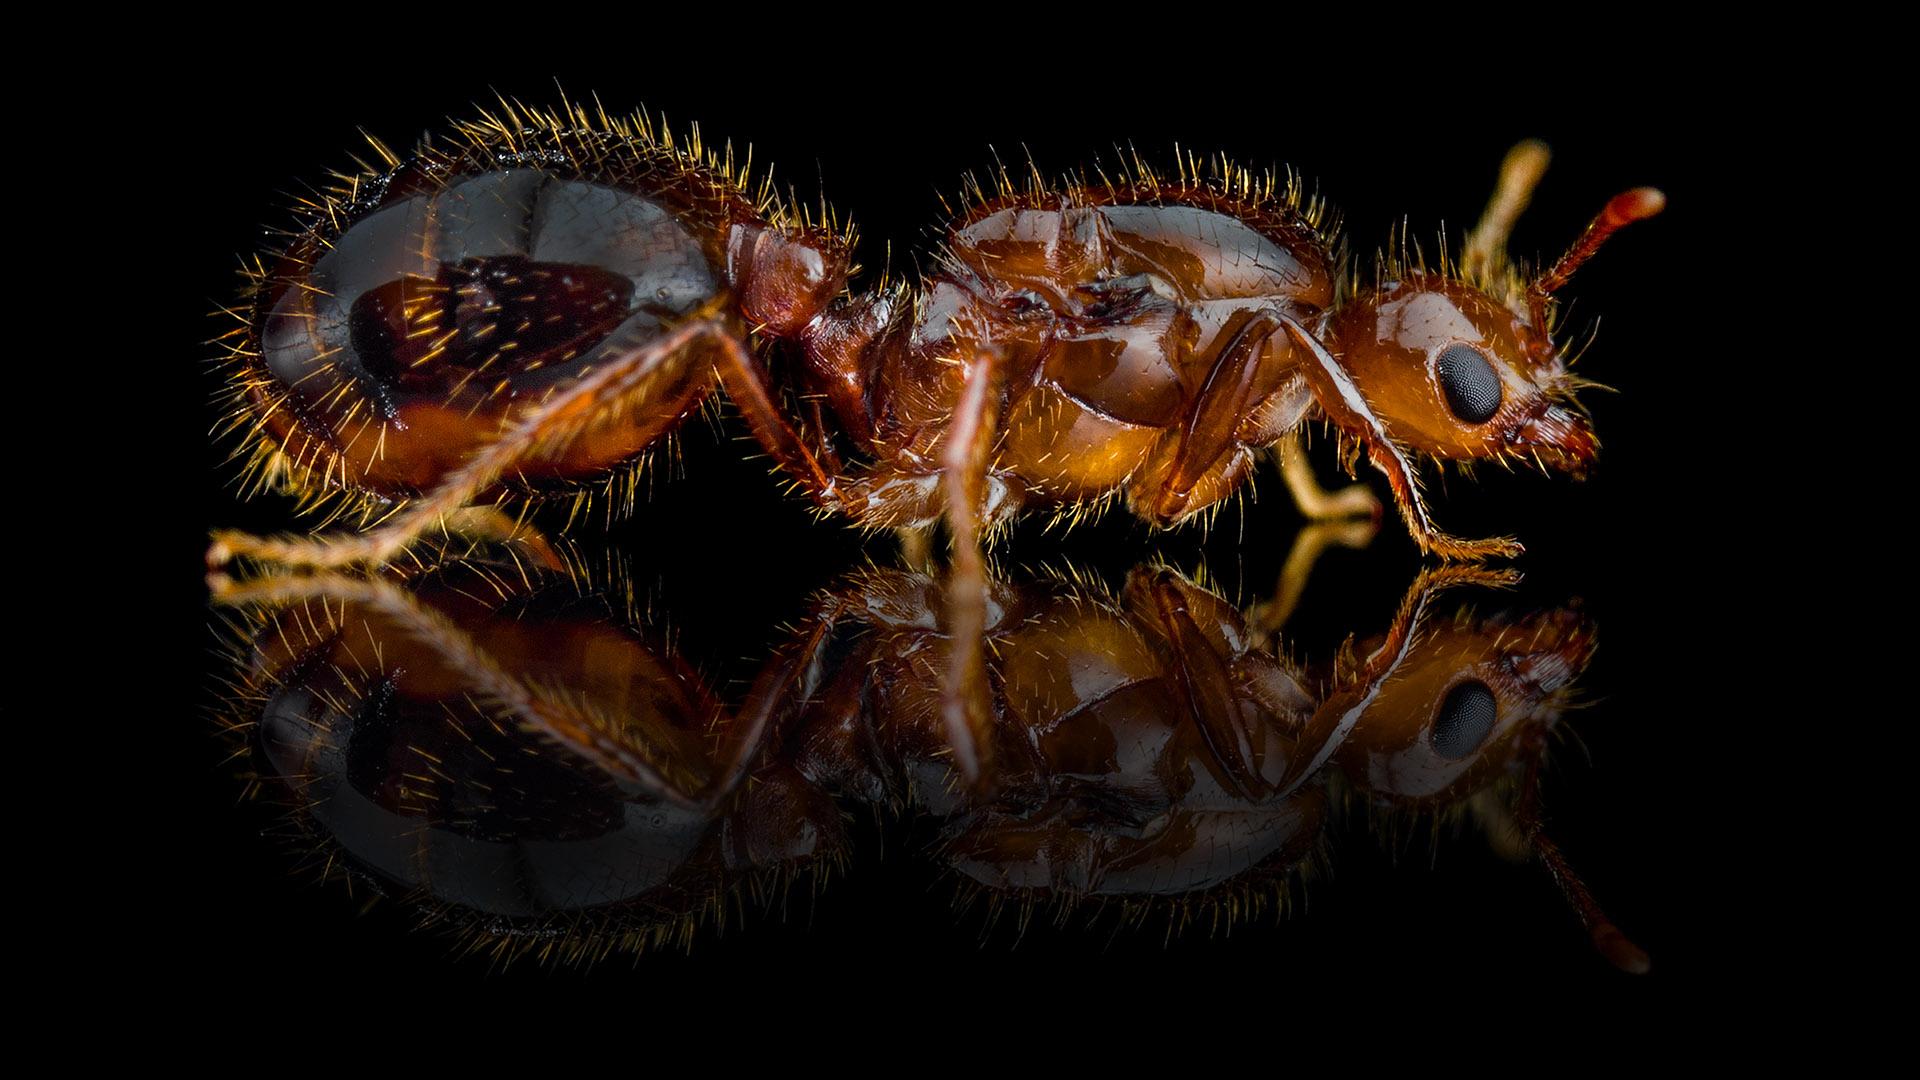 Запах актинобактерий подсказал муравьям благоприятное место для колонии